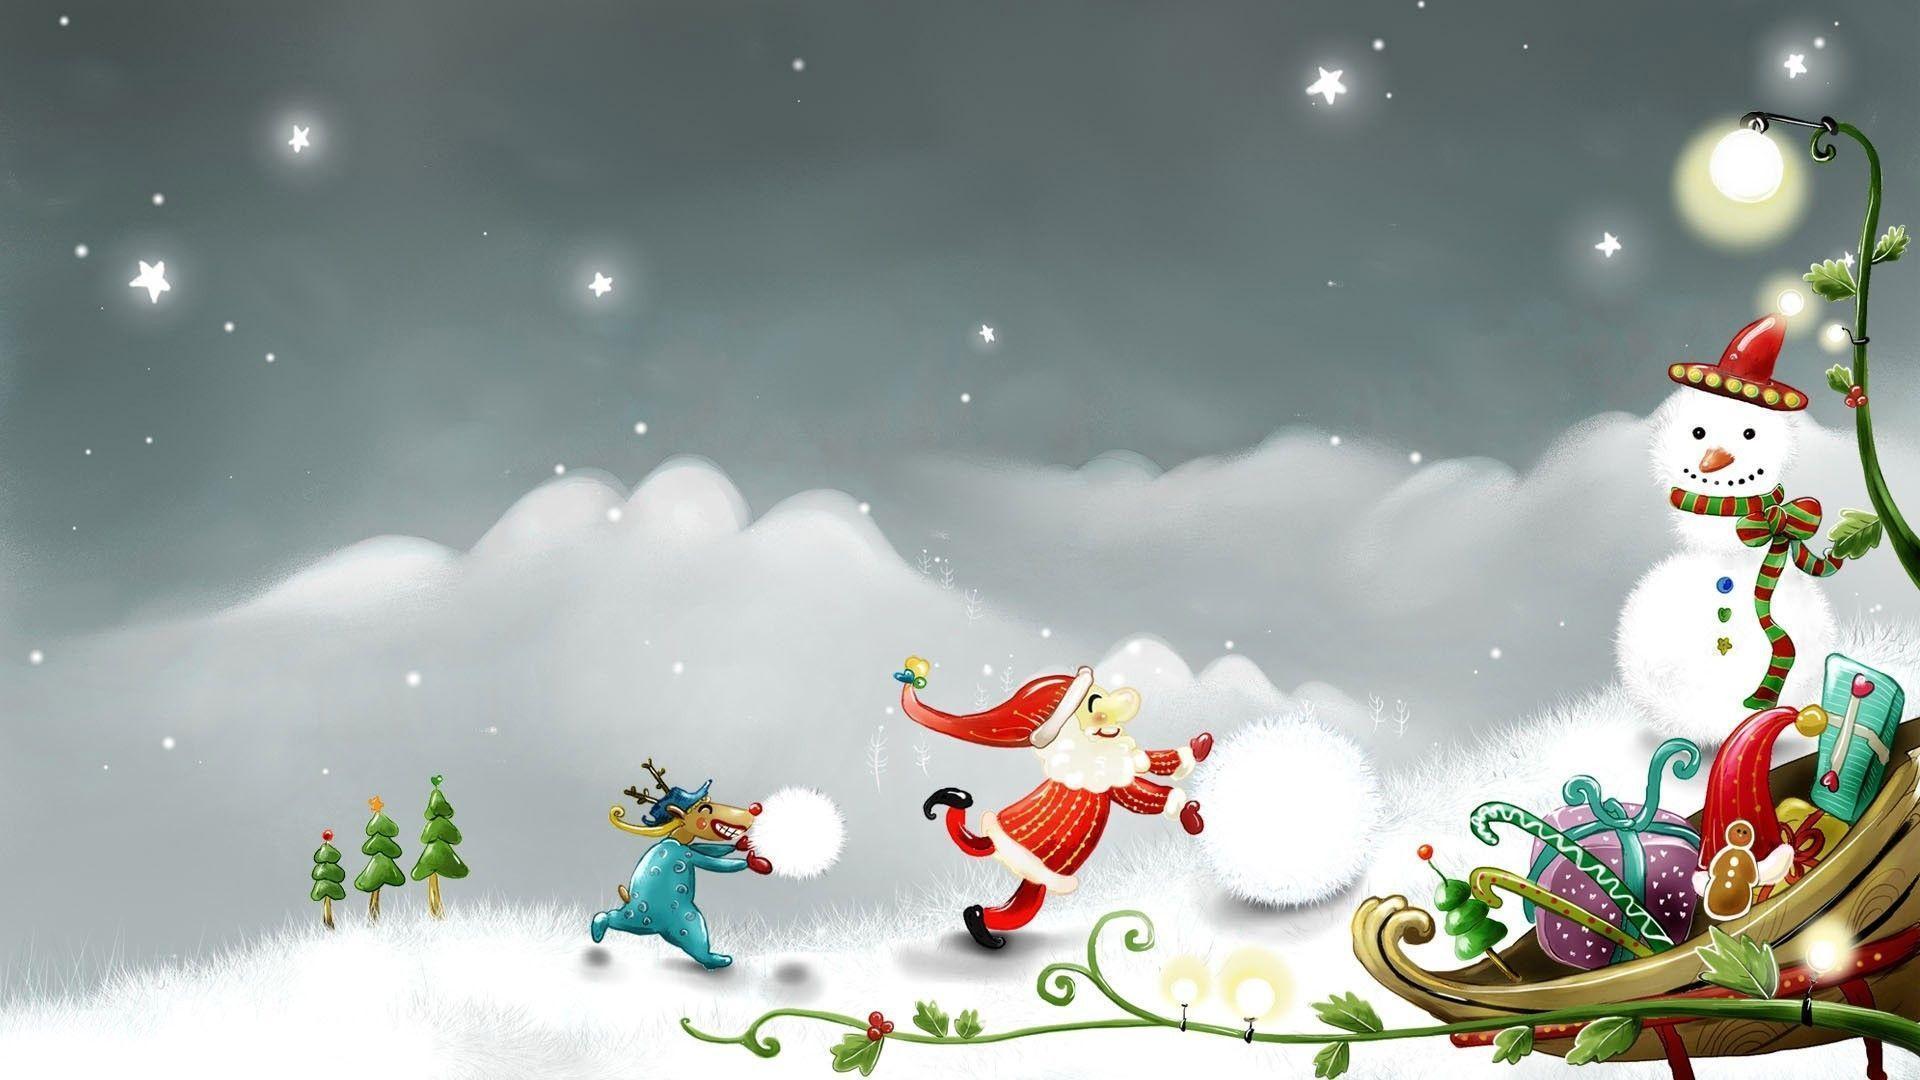 Santa And Rudolph Making